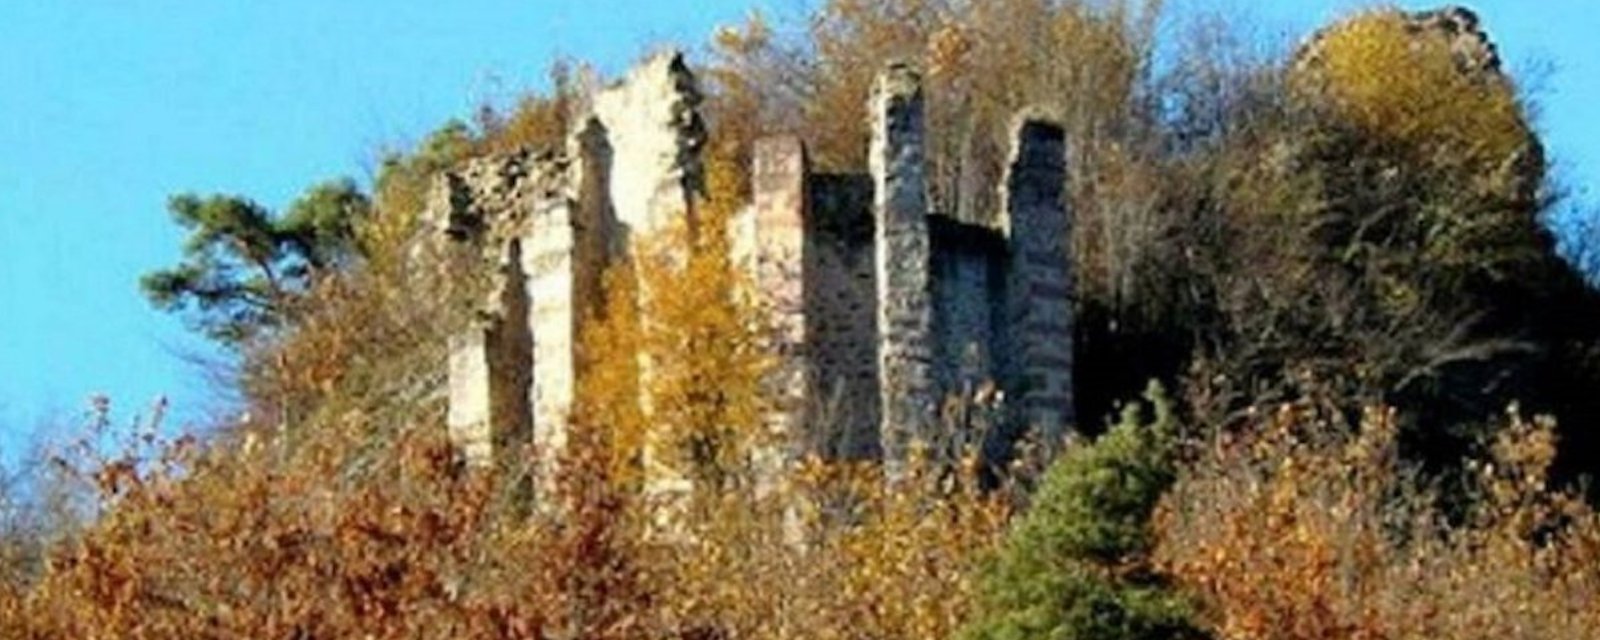 À vendre en Alsace: une ruine de château médiéval